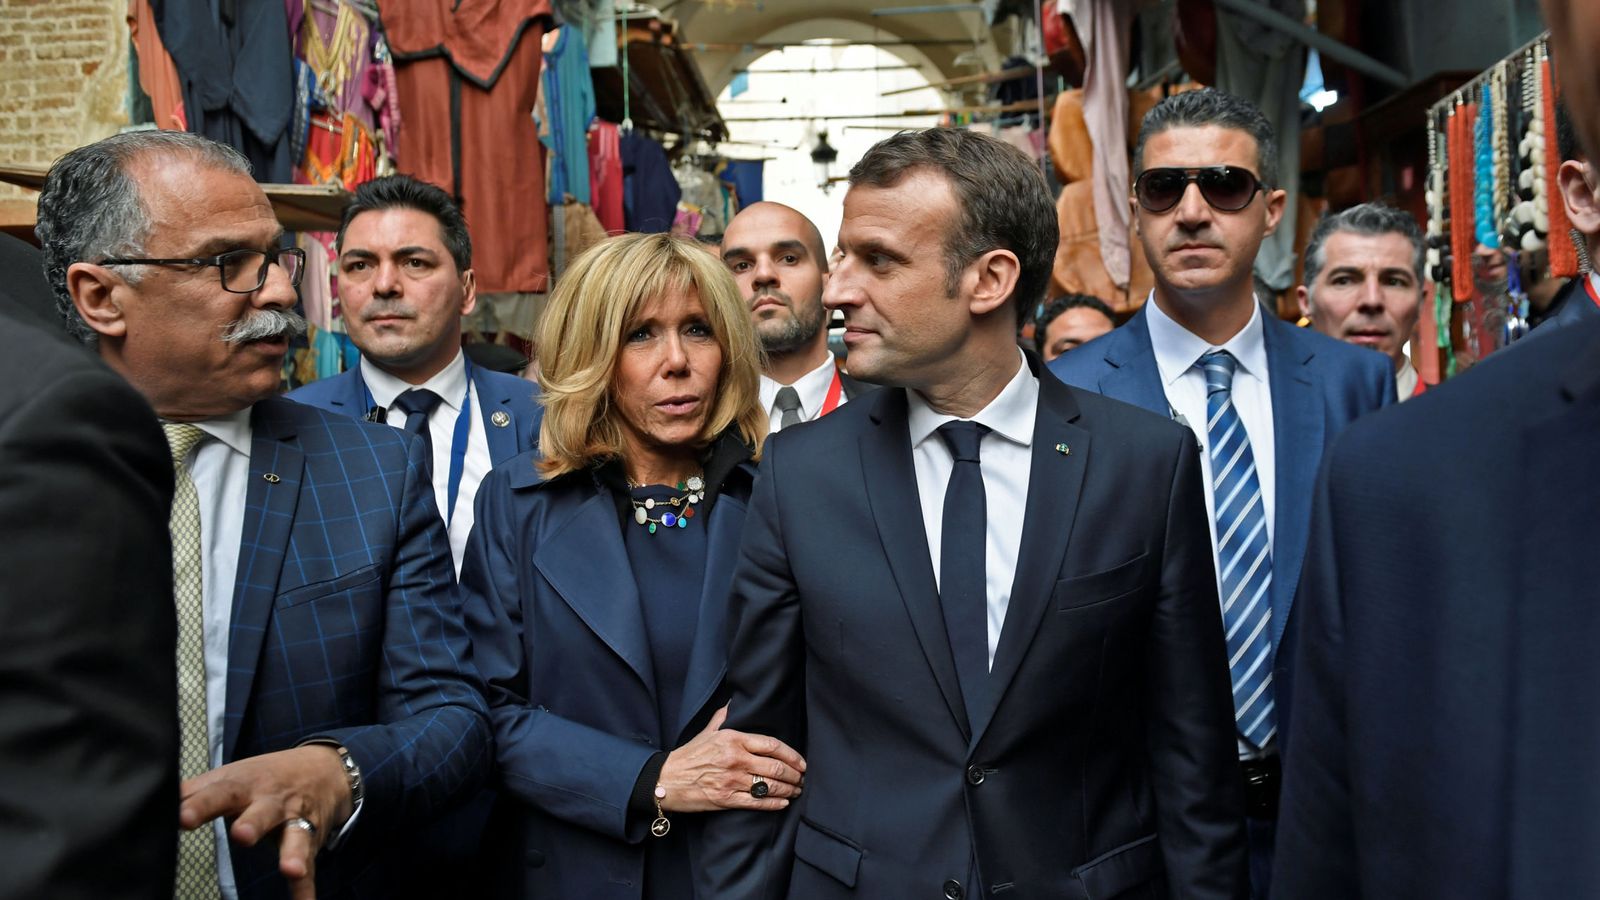 Foto: El presidente de Francia, Emmanuel Macron, y su esposa Brigitte durante una visita a Túnez, el 1 de febrero de 2018. (Reuters)